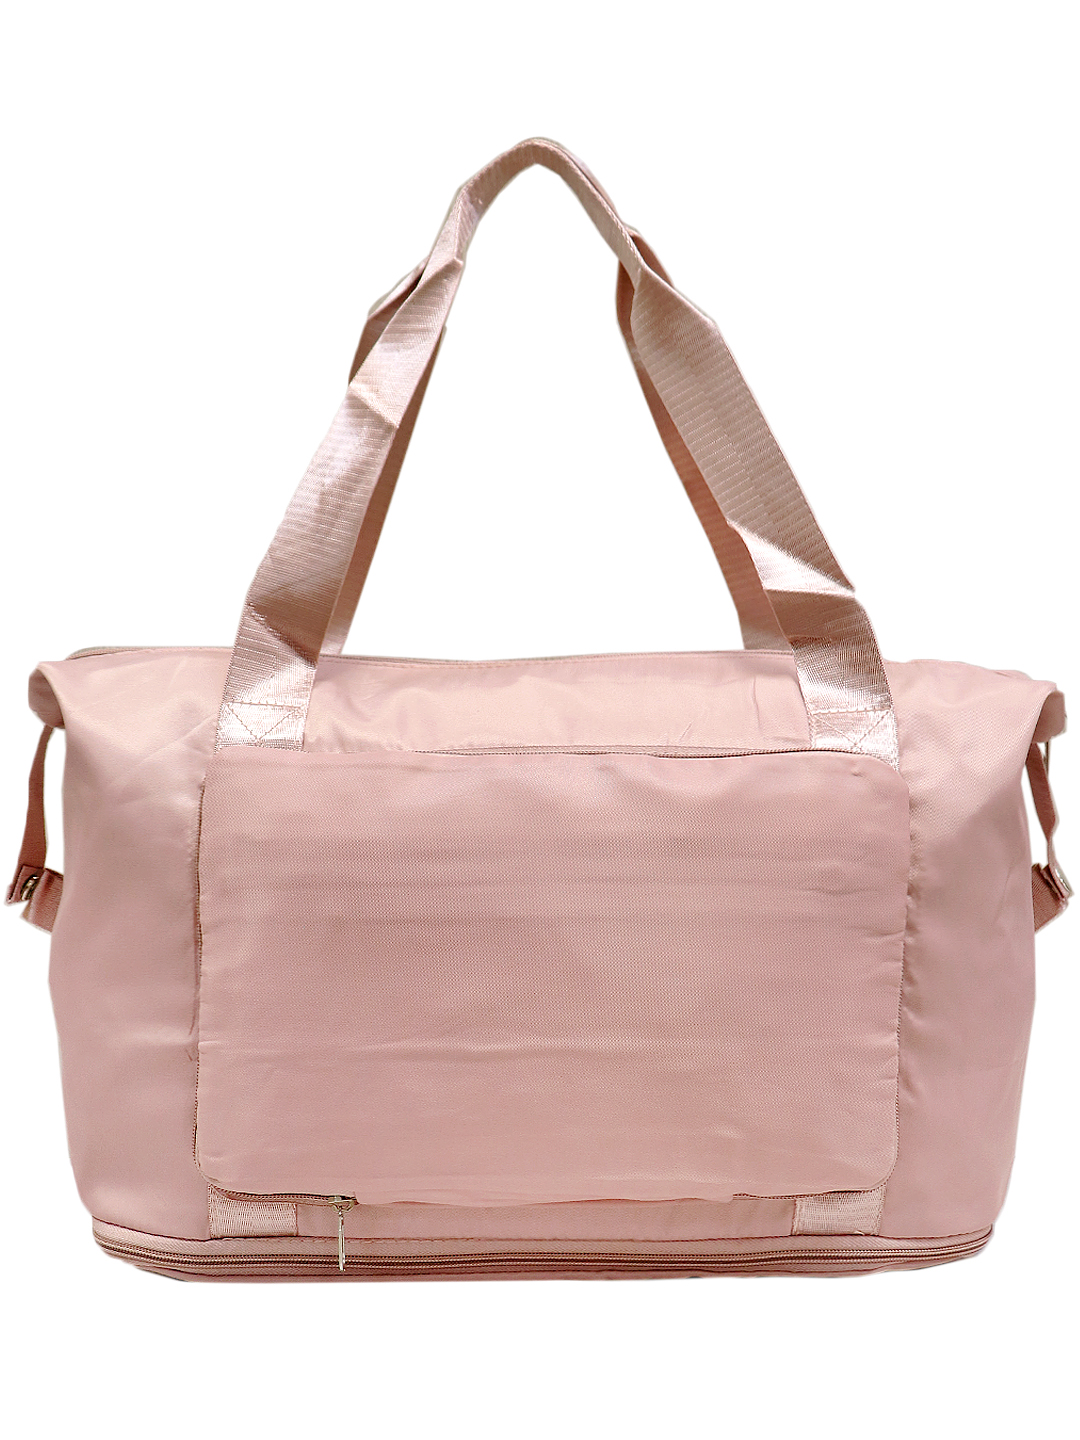 Дорожная сумка женская Caramelo 202201-3 розовая, 26х42х20 см